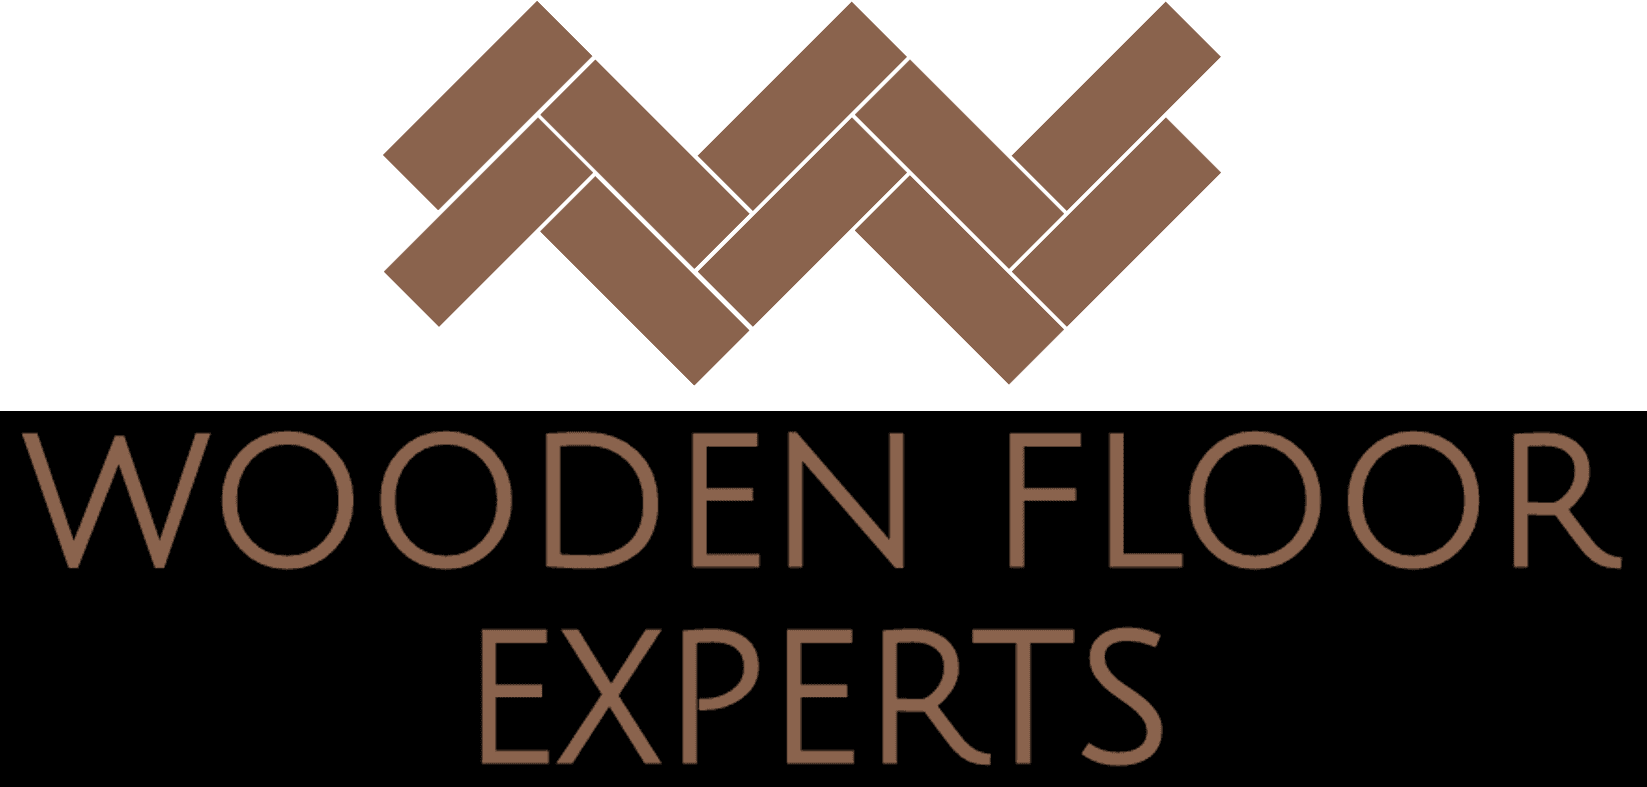 Wooden Floor Experts logo